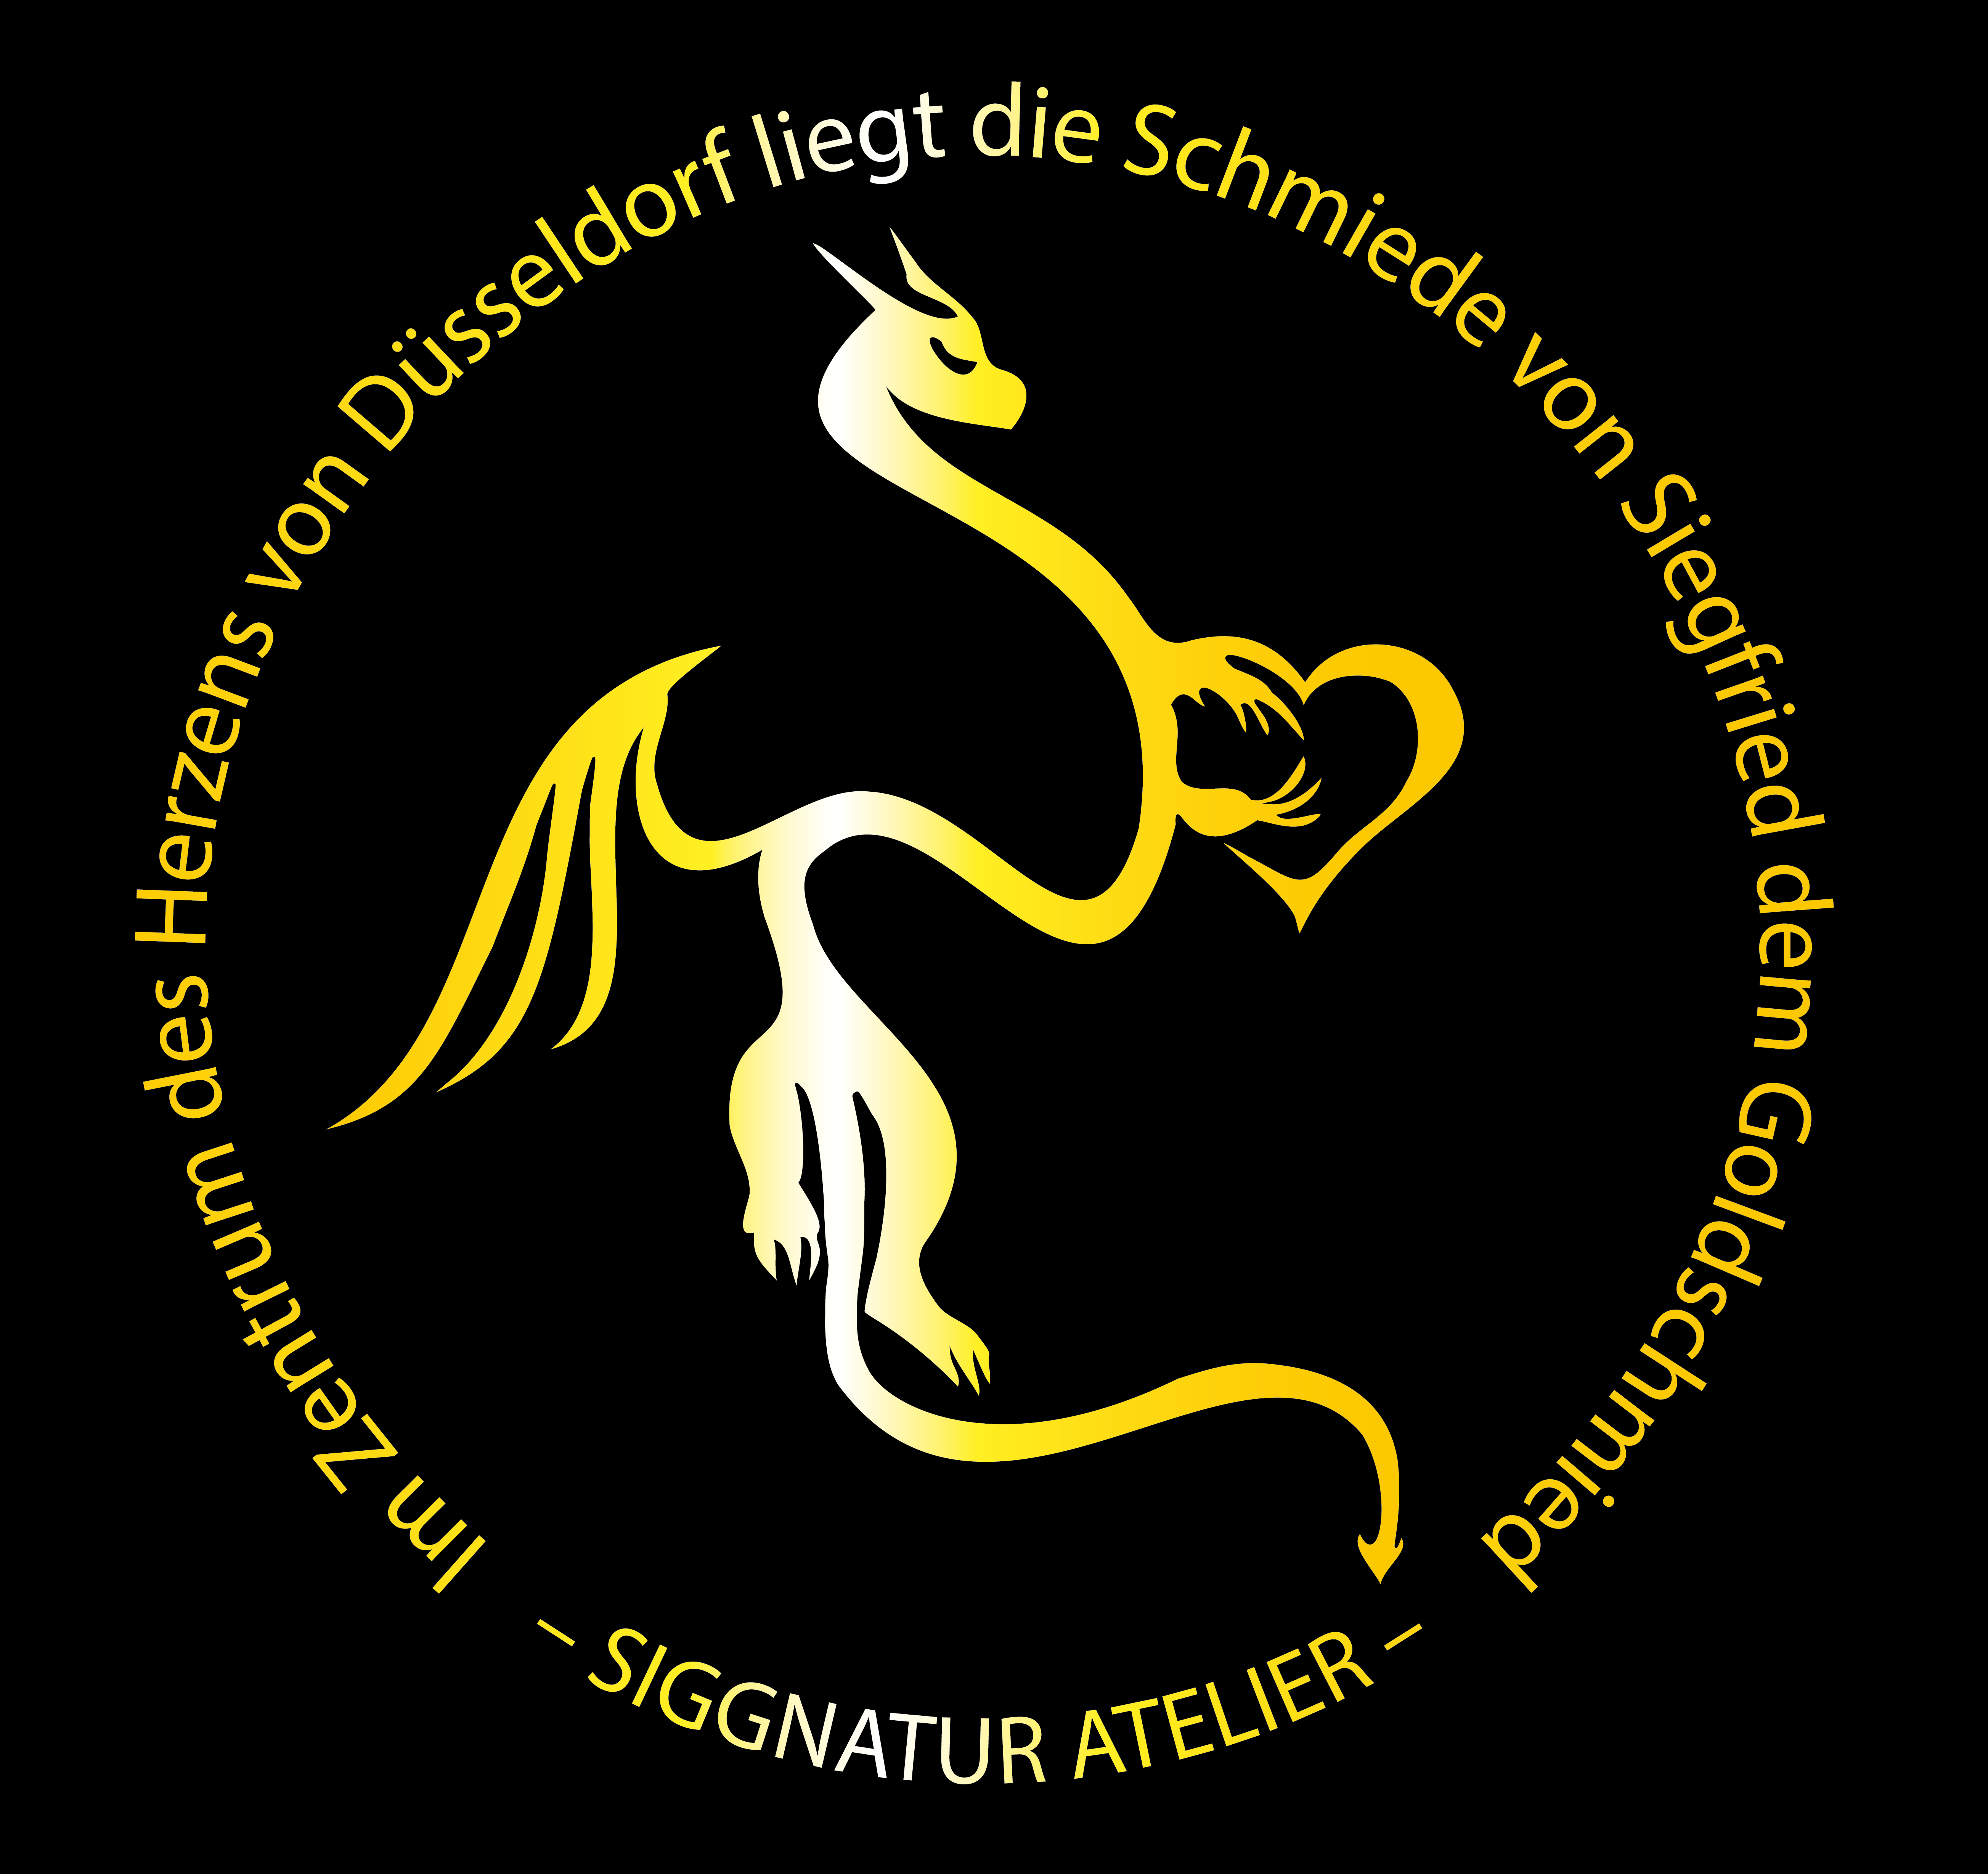 Der Rheingold Drache von Siegfried dem Goldschmied. Der Rheinverlauf von Düsseldorf als Drache mit dem Standort von Siggnatur Atelier im Herzen.